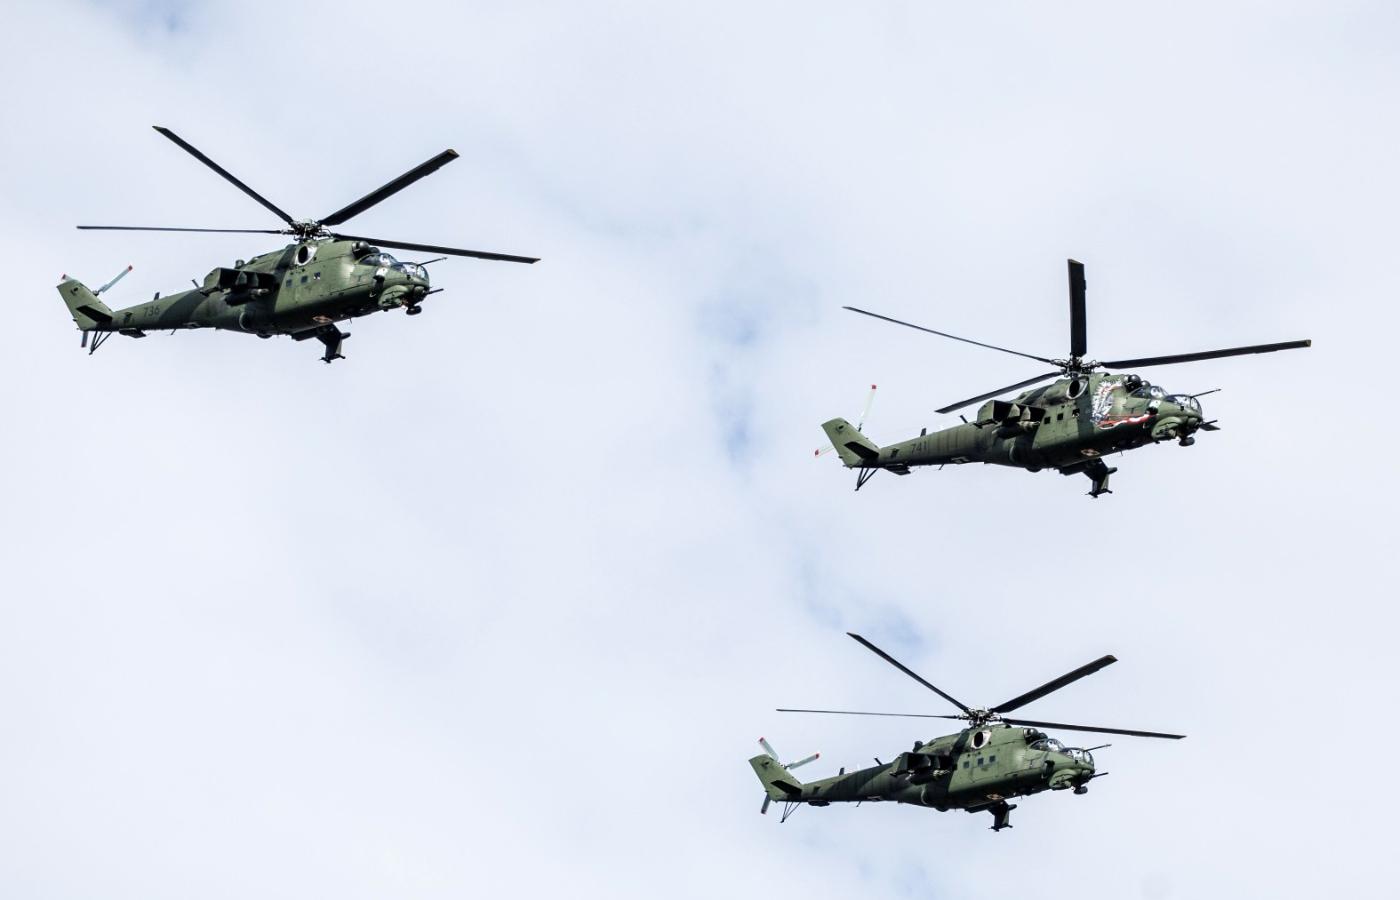 Śmigłowce Mi-24 podczas parady wojskowej w Warszawie 15 sierpnia 2018 r.